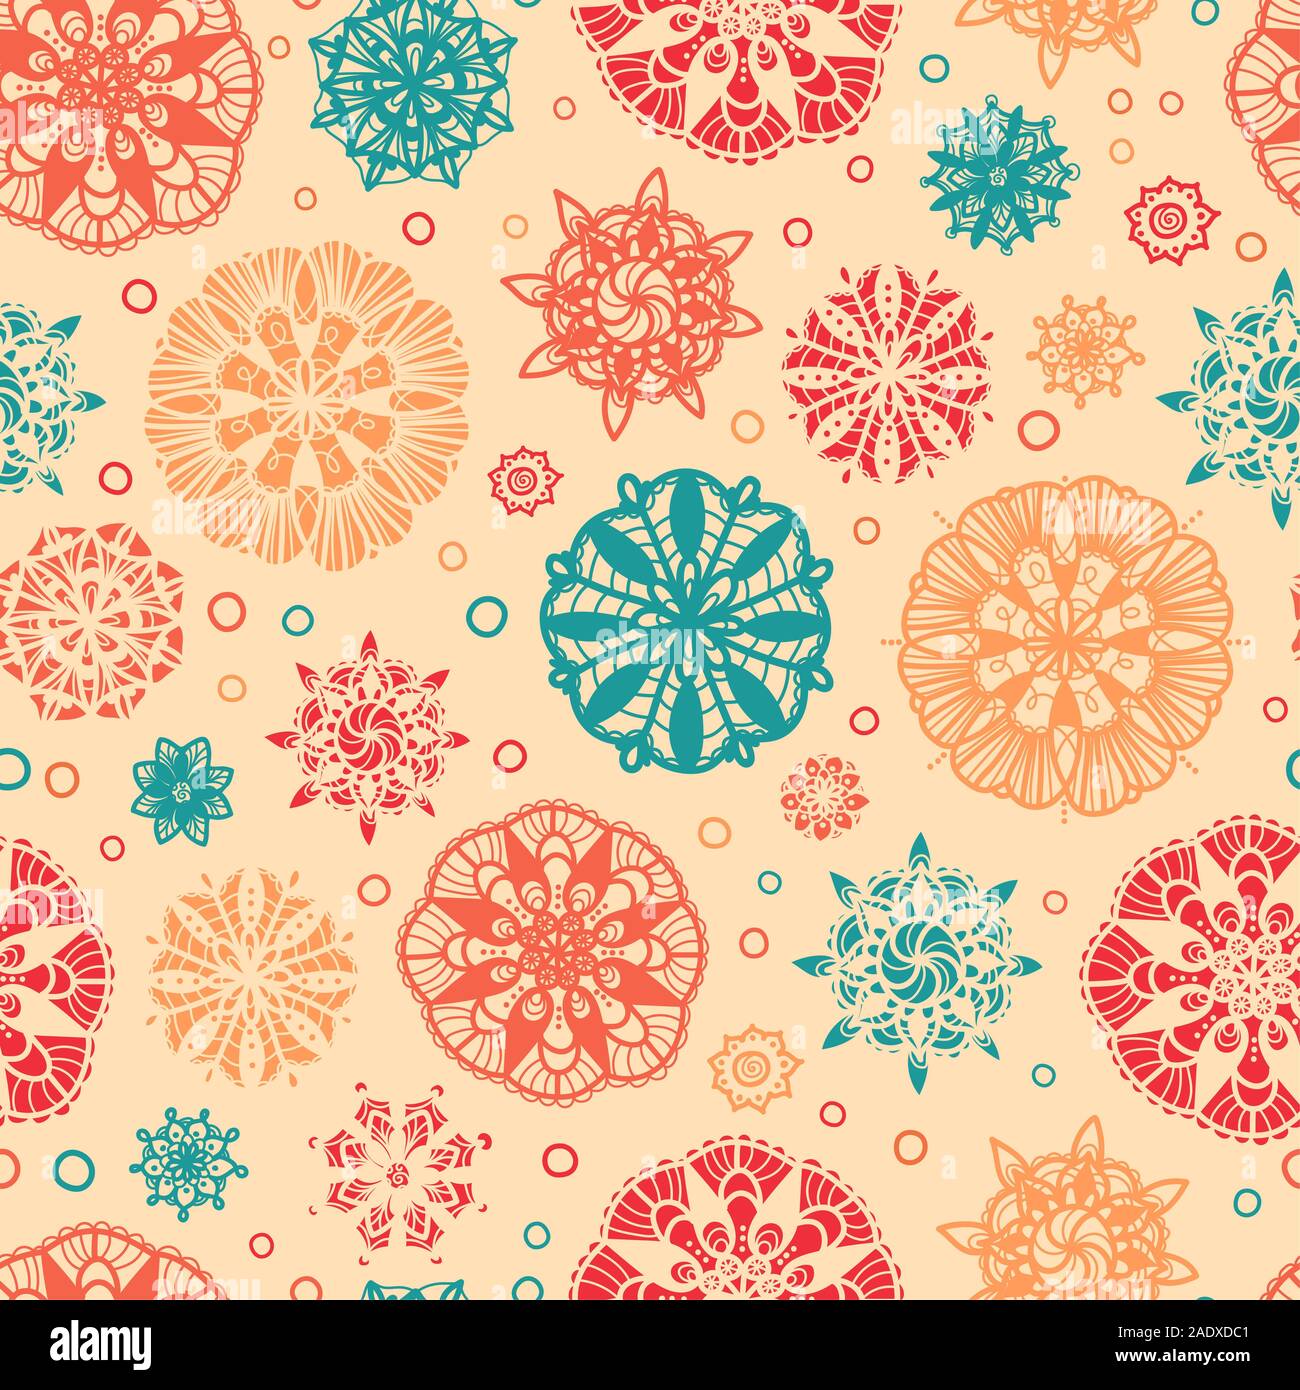 Abstrakte Doodle Kreise nahtlose Muster Hintergrund. Kreative handgezeichnete Mandalas. Ideal für elegante Textilien, Karten, die Umhüllung, die Tapete - Vektor des Stockfoto